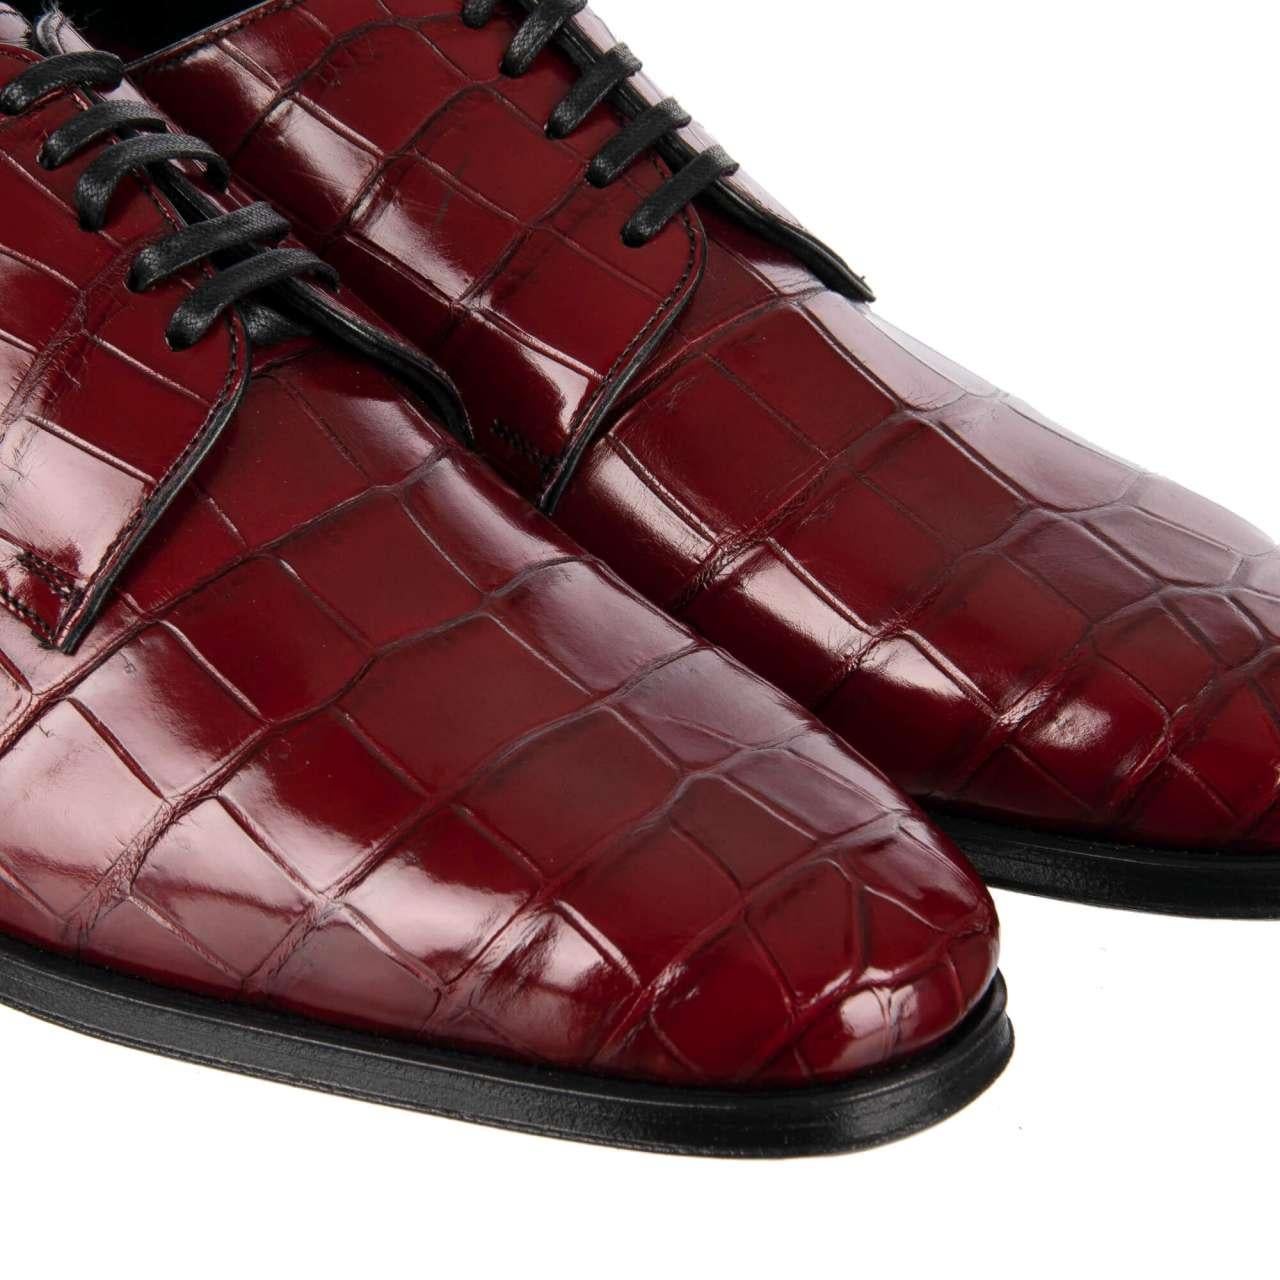 Dolce & Gabbana Crocodile Leather Derby Shoes VENEZIA Bordeaux Red EUR 39 For Sale 1